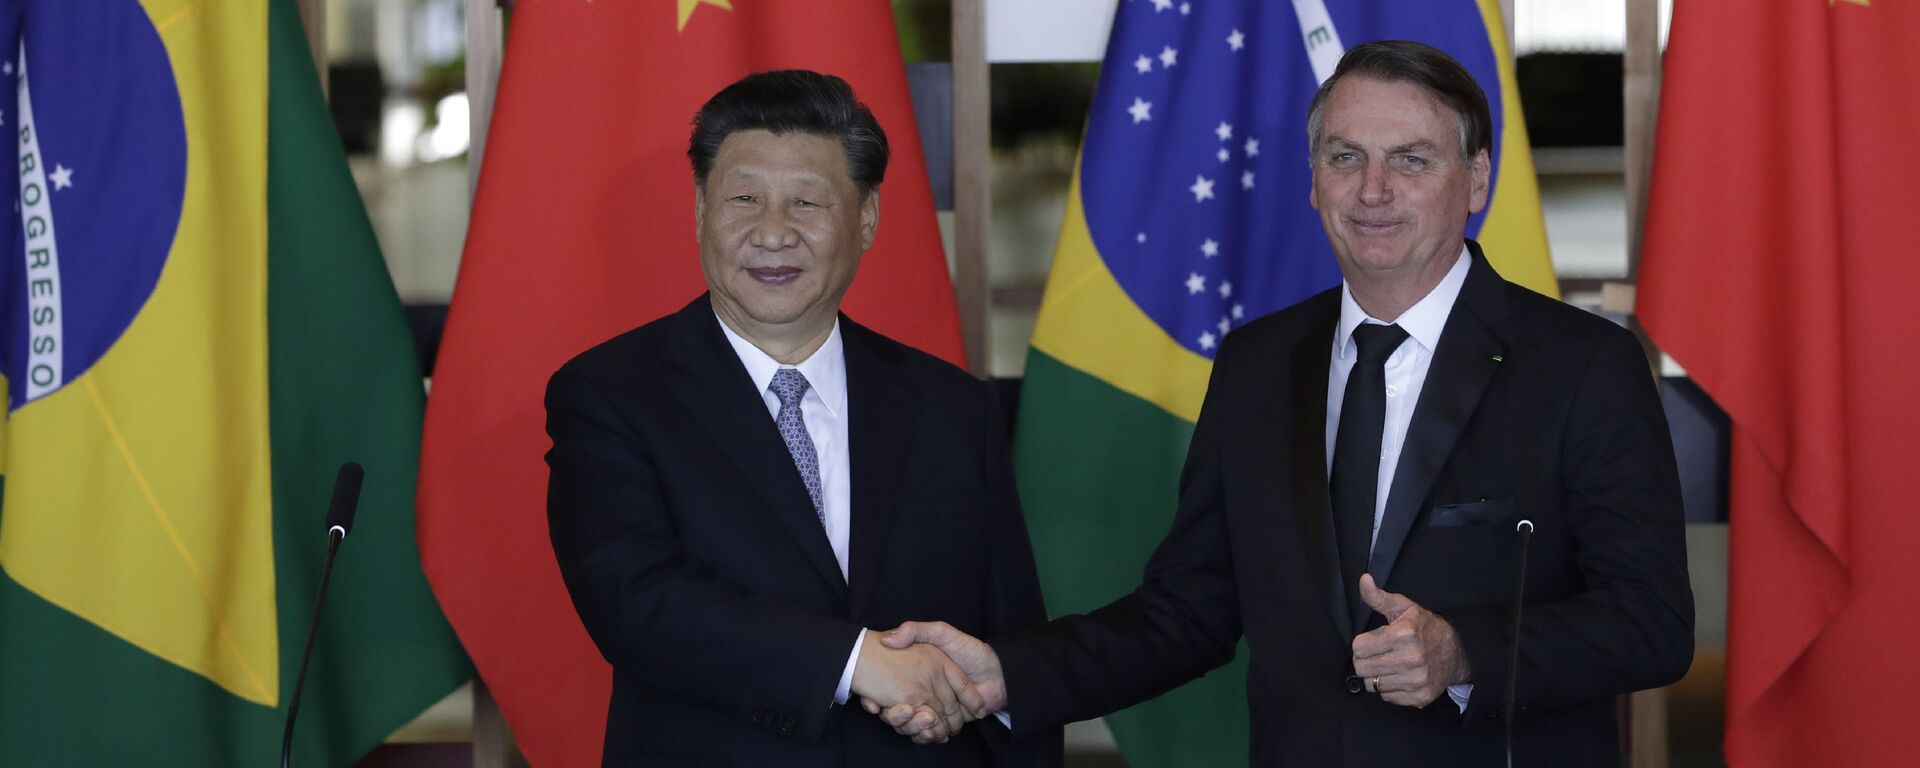 Presidentes da China, Xi Jinping, e do Brasil, Jair Bolsonaro, se cumprimentam durante cúpula do BRICS em Brasília, em 2019 - Sputnik Brasil, 1920, 09.09.2021